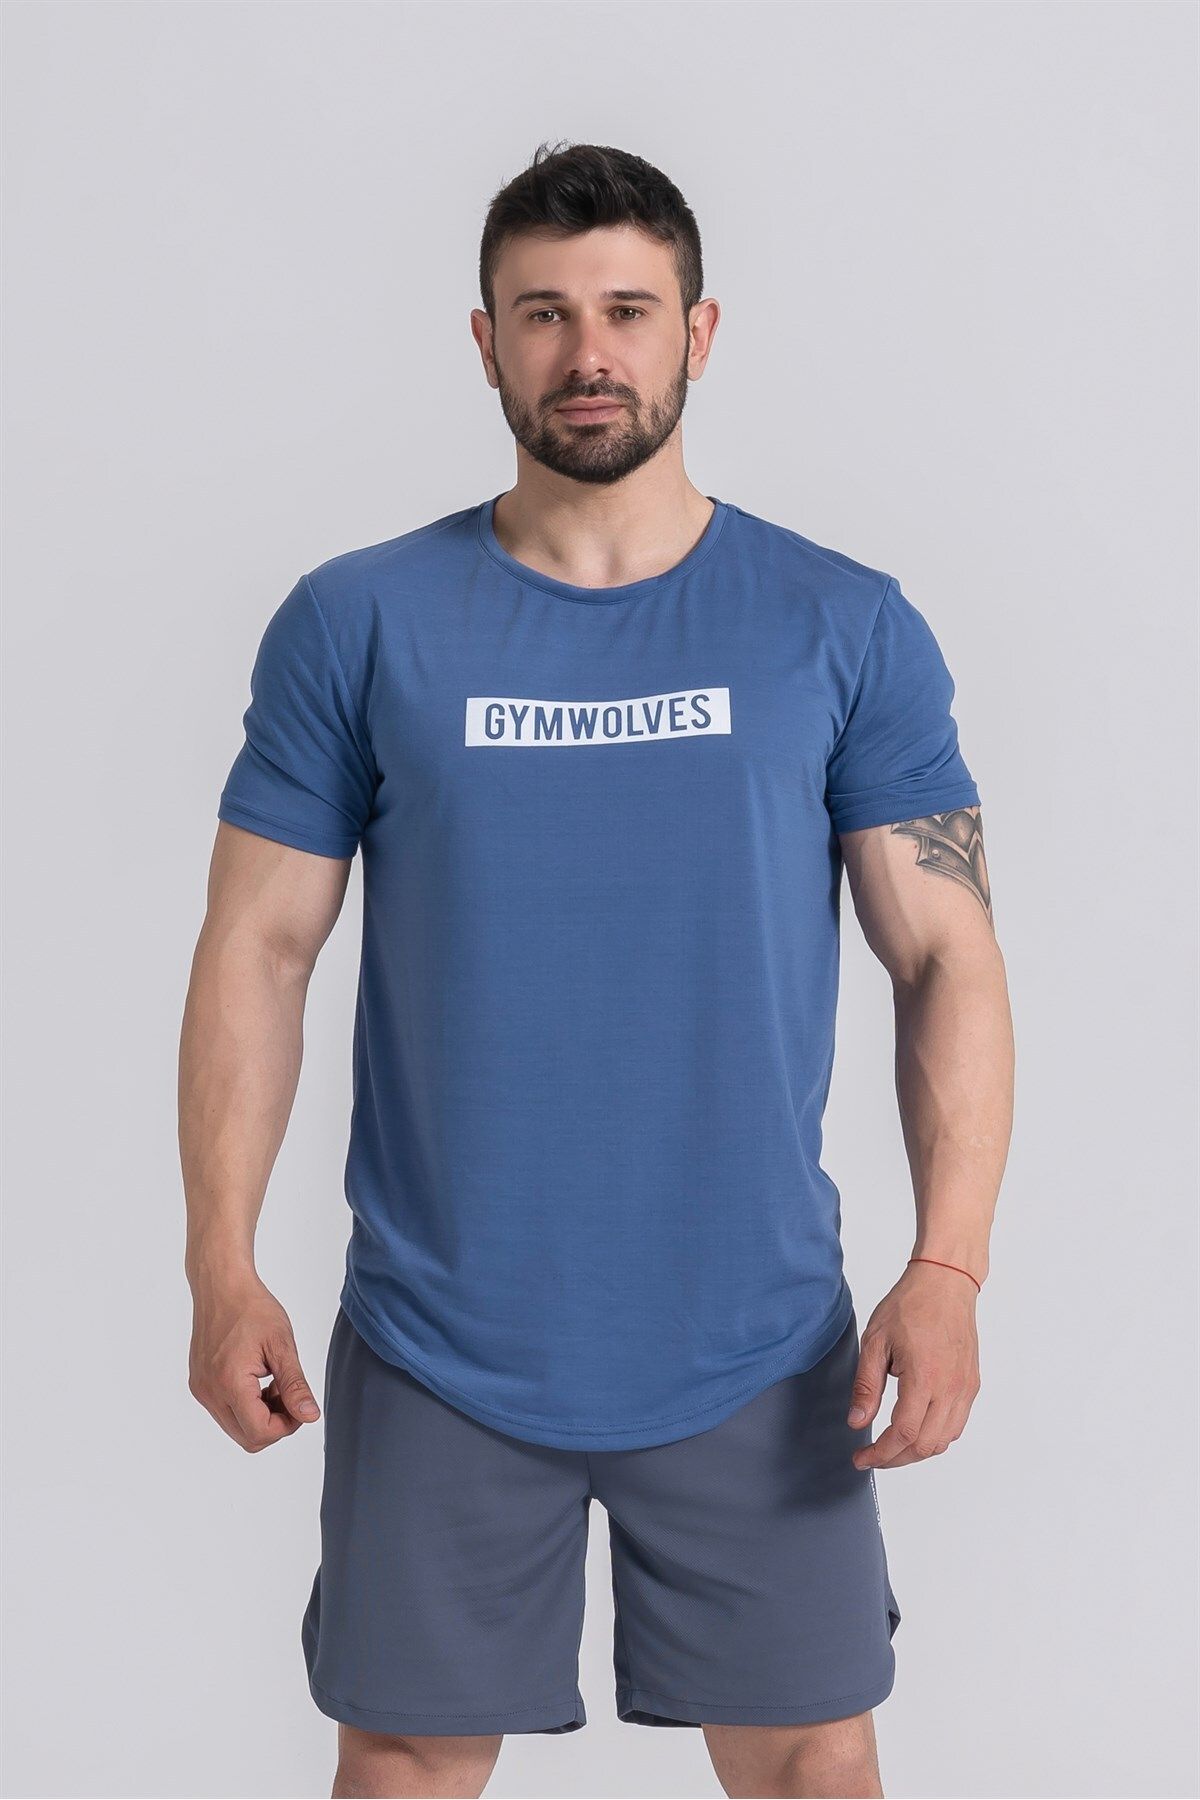 Gymwolves Erkek Spor T-shirt | Indigo | Workout T-shirt |